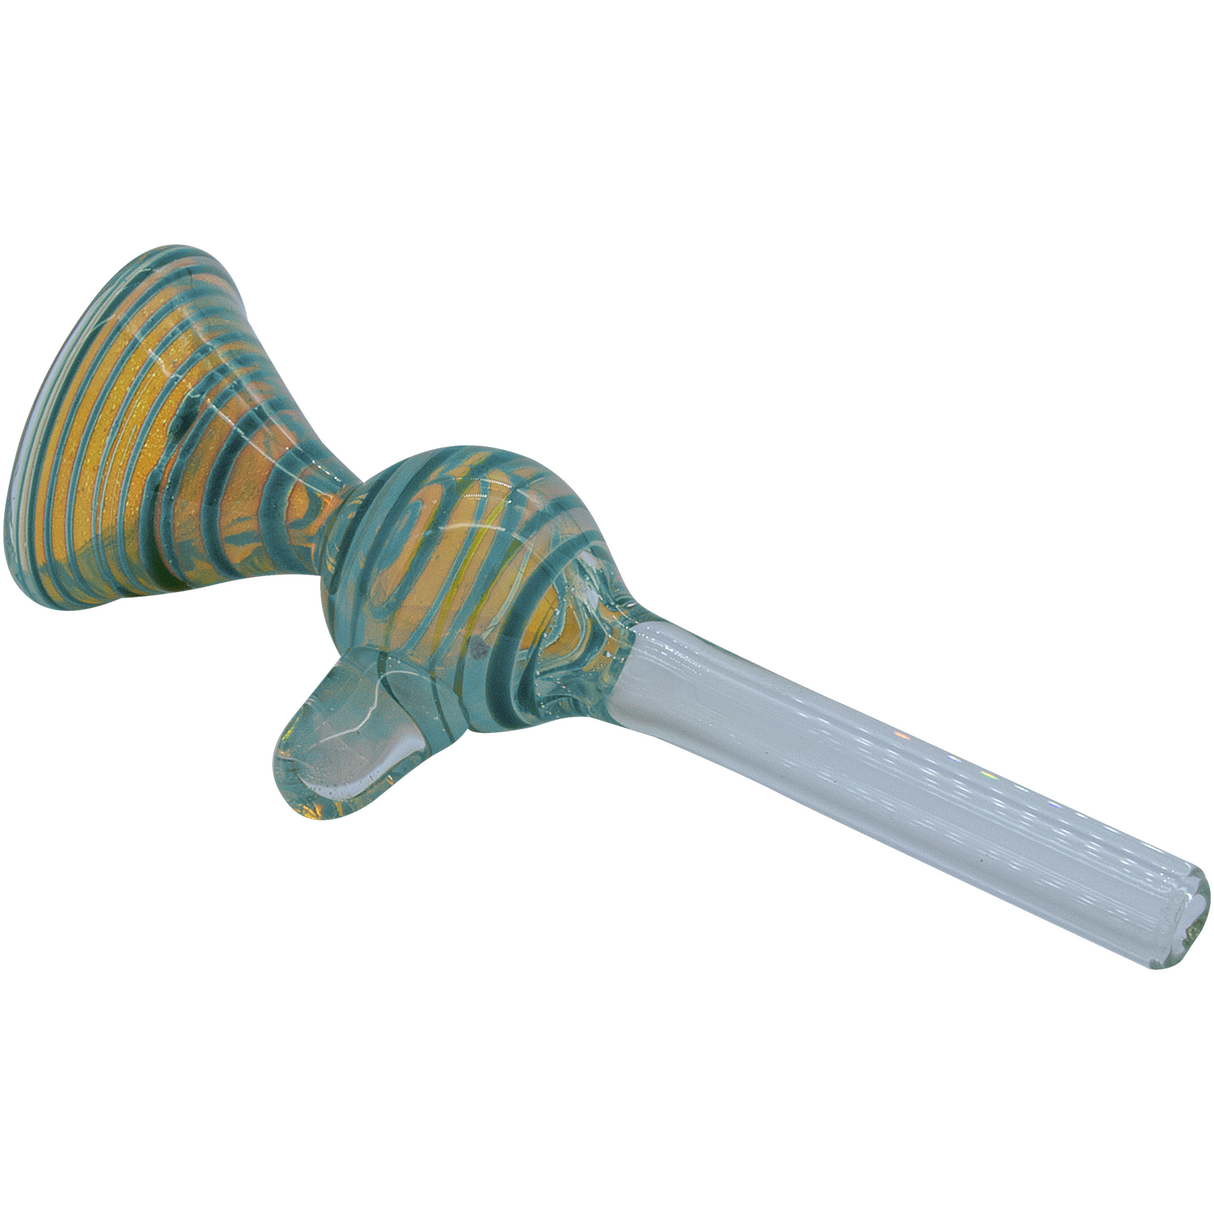 LA Pipes "Loud Speaker" Teal Pull-Stem Slide Bowl for Bongs, Borosilicate Glass with Rubber Grommet Joint